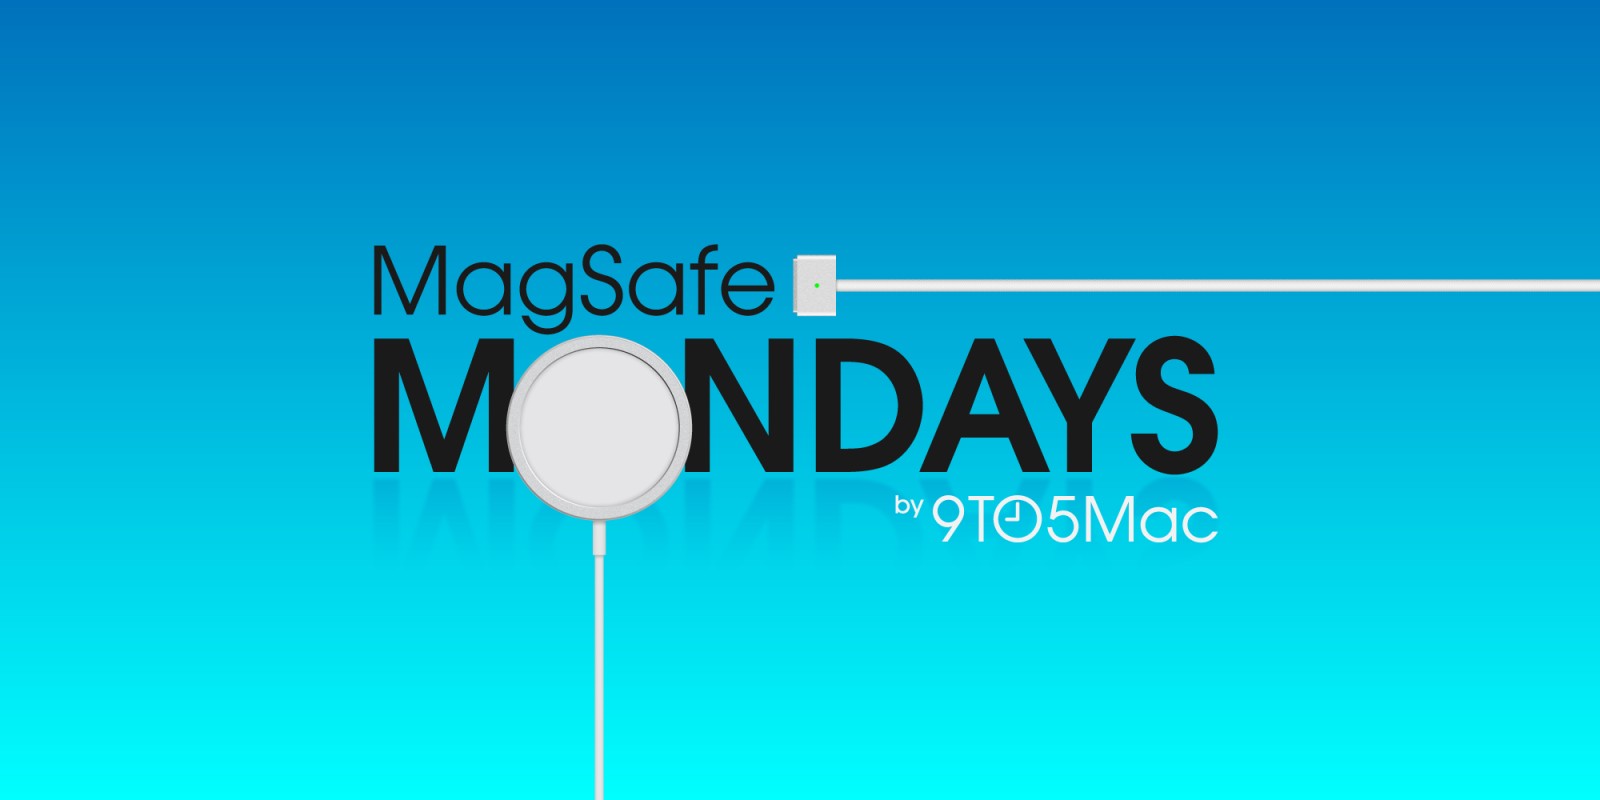 MagSafe Monday